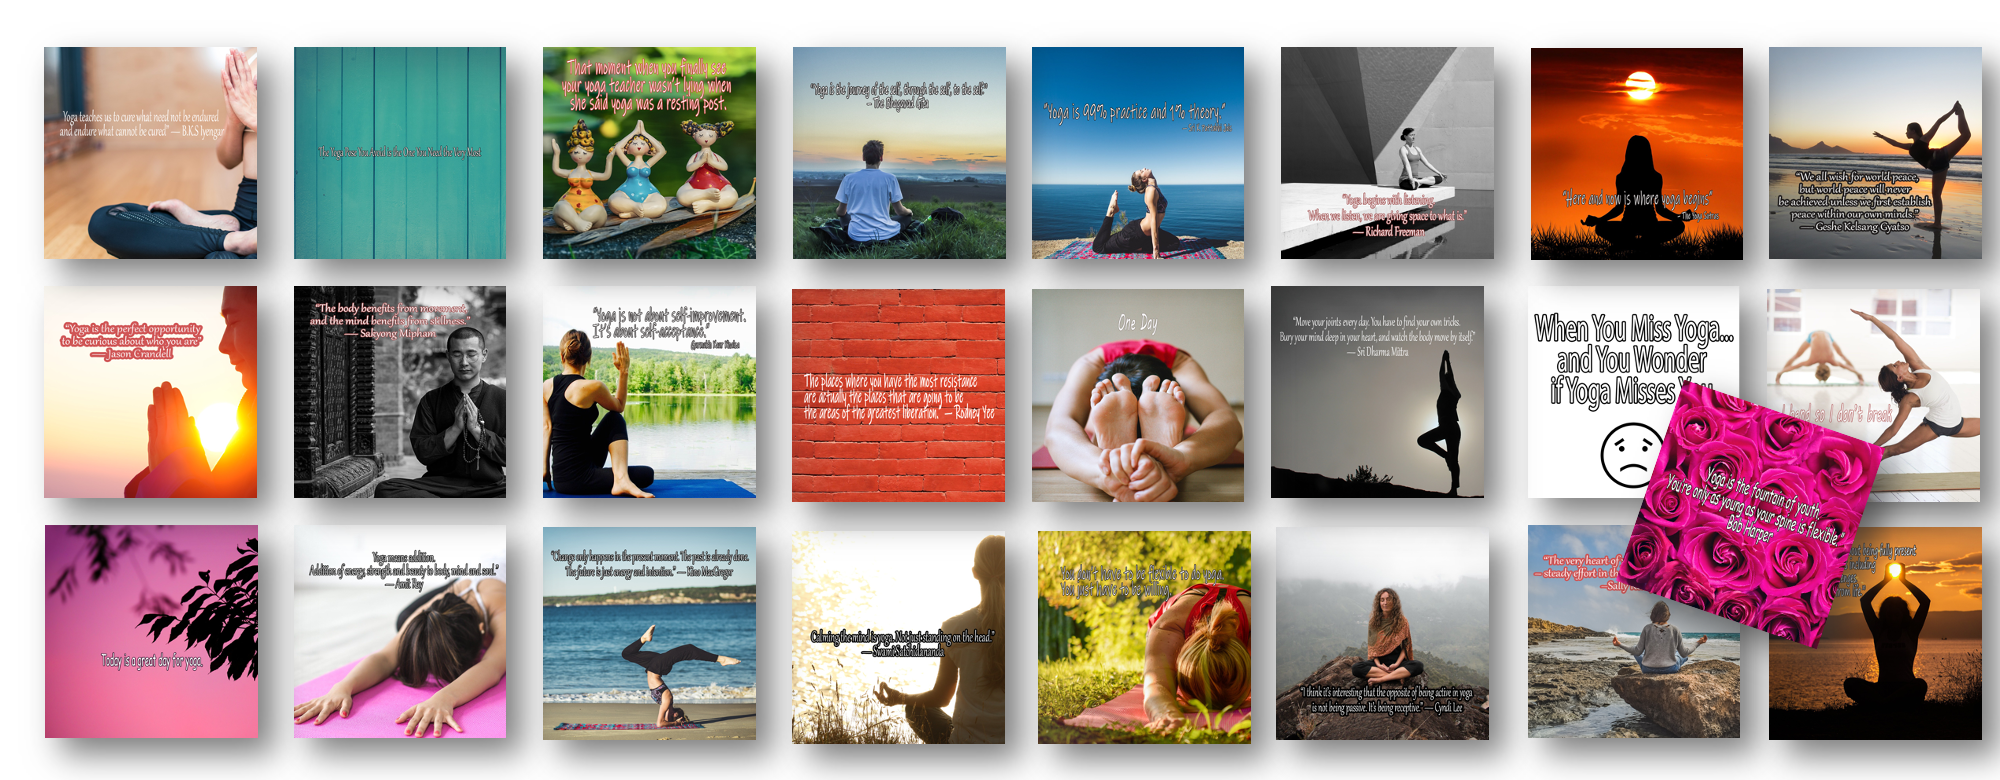 25 More Instagram Yoga Quotes